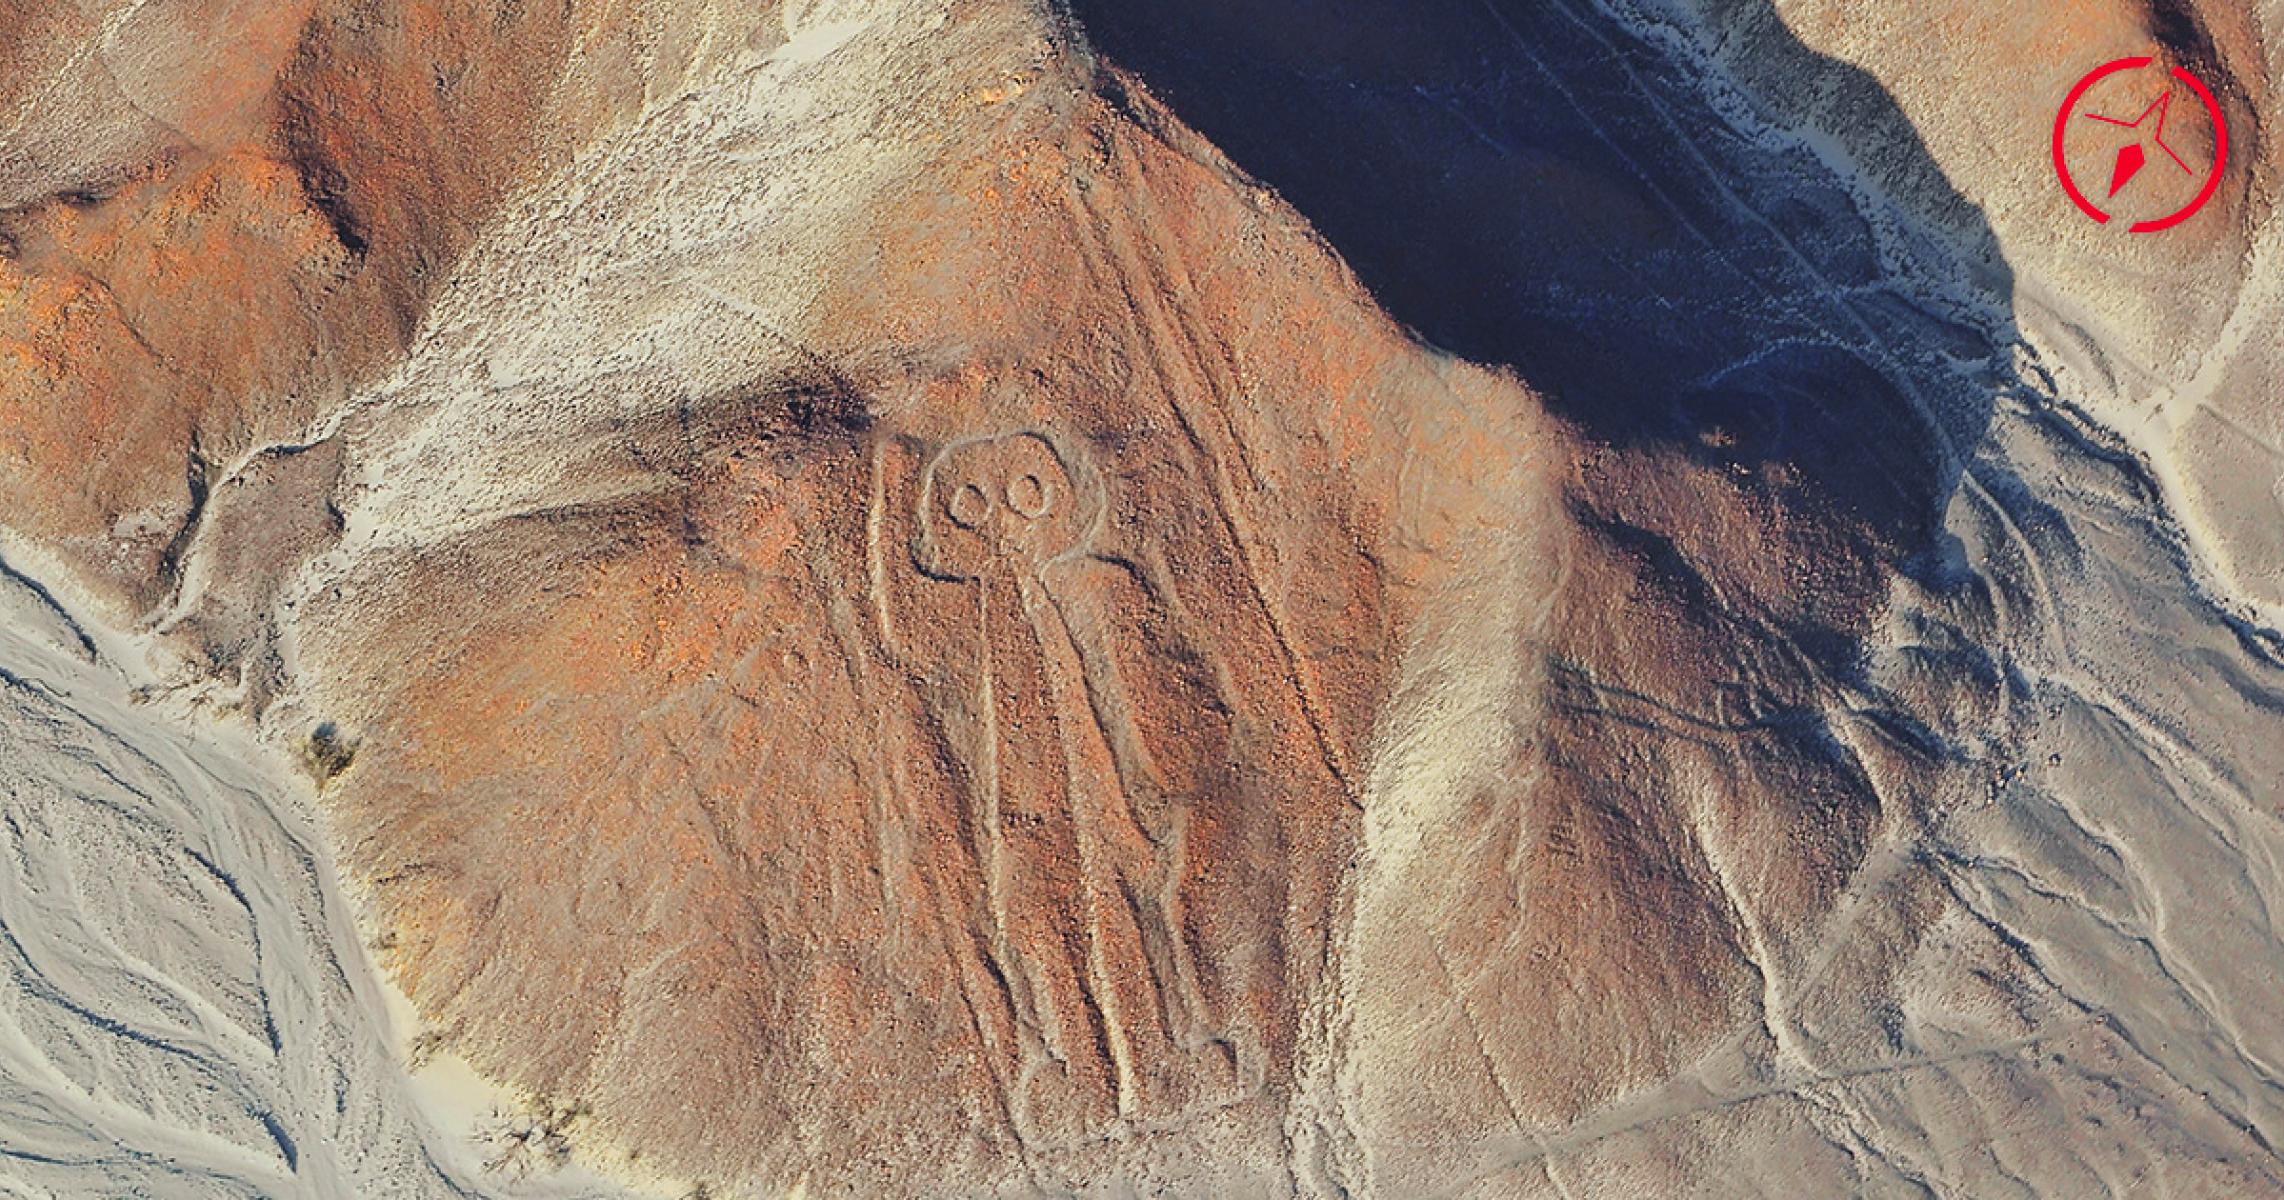 Viaggio in Perù: le meraviglie di Nazca ed il mistero dei geoglifi